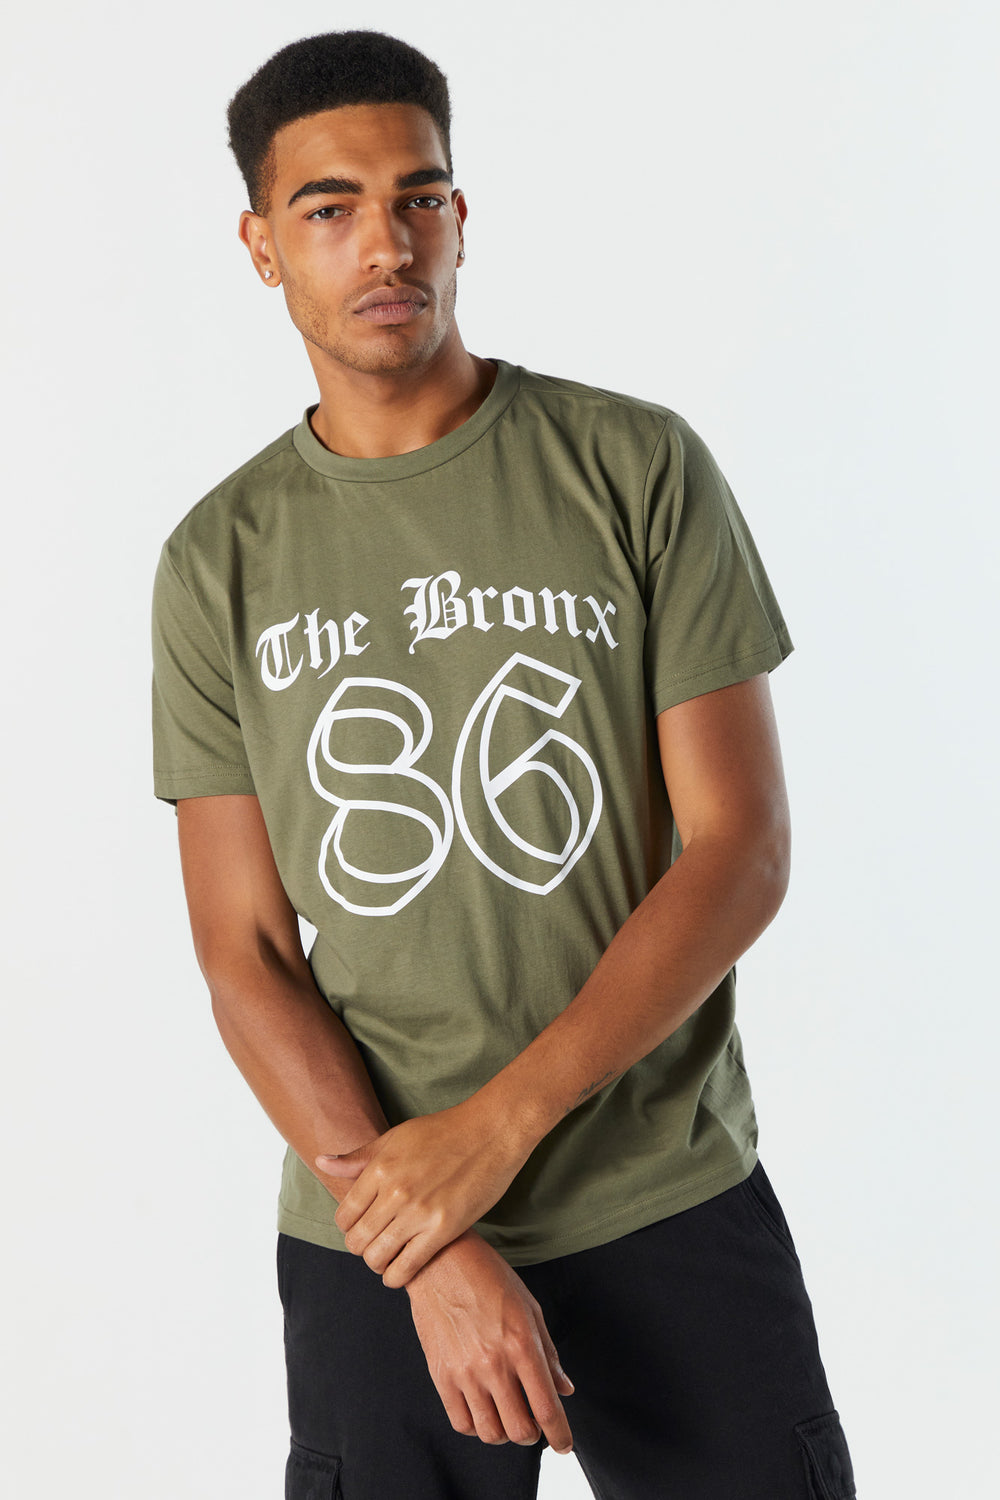 The Bronx Graphic T-Shirt The Bronx Graphic T-Shirt 1